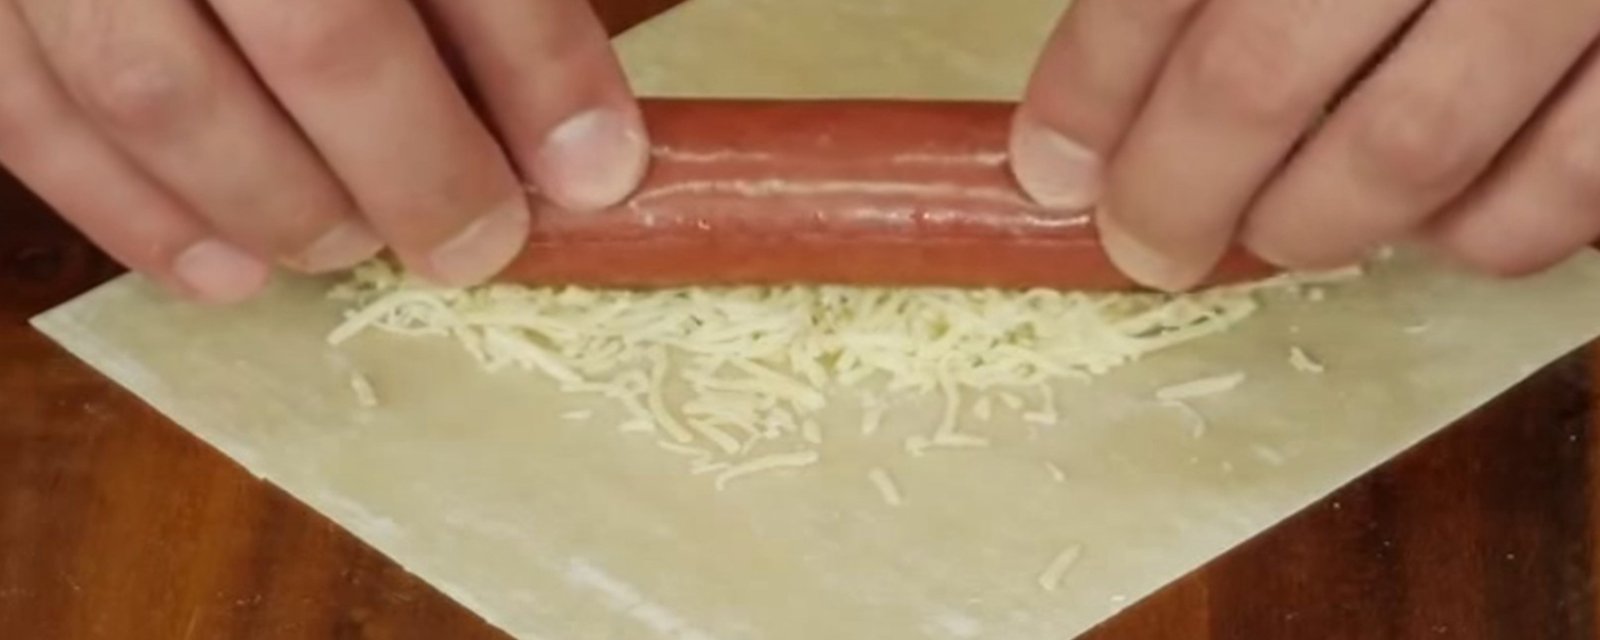 Il dépose des saucisses sur une pâte à egg roll et il crée un plat nouveau genre